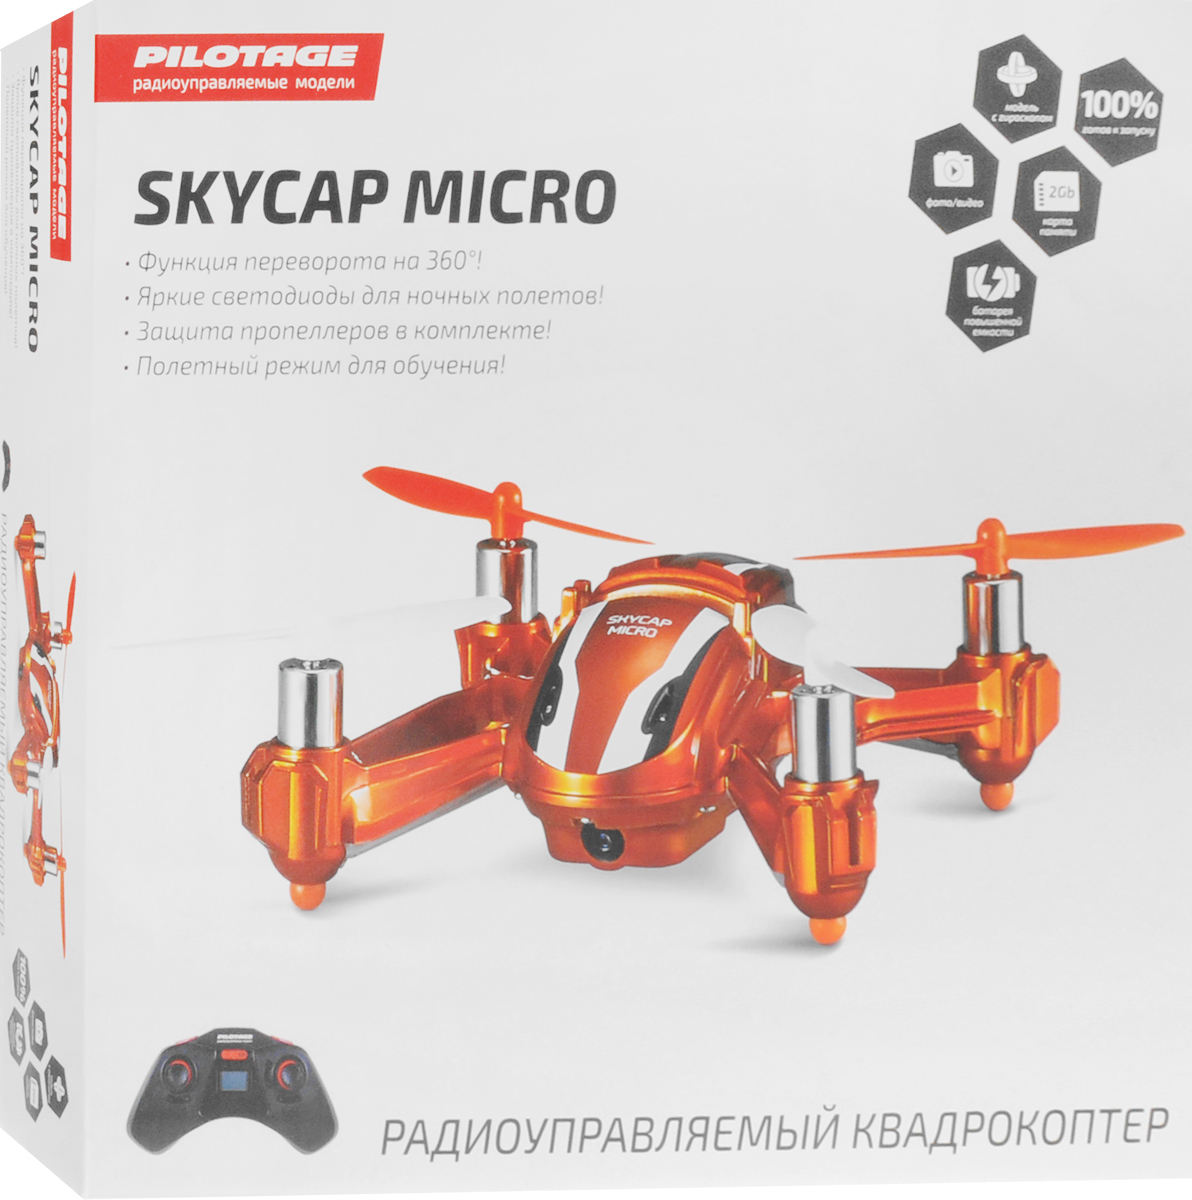 Pilotage    Skycap micro RTF  